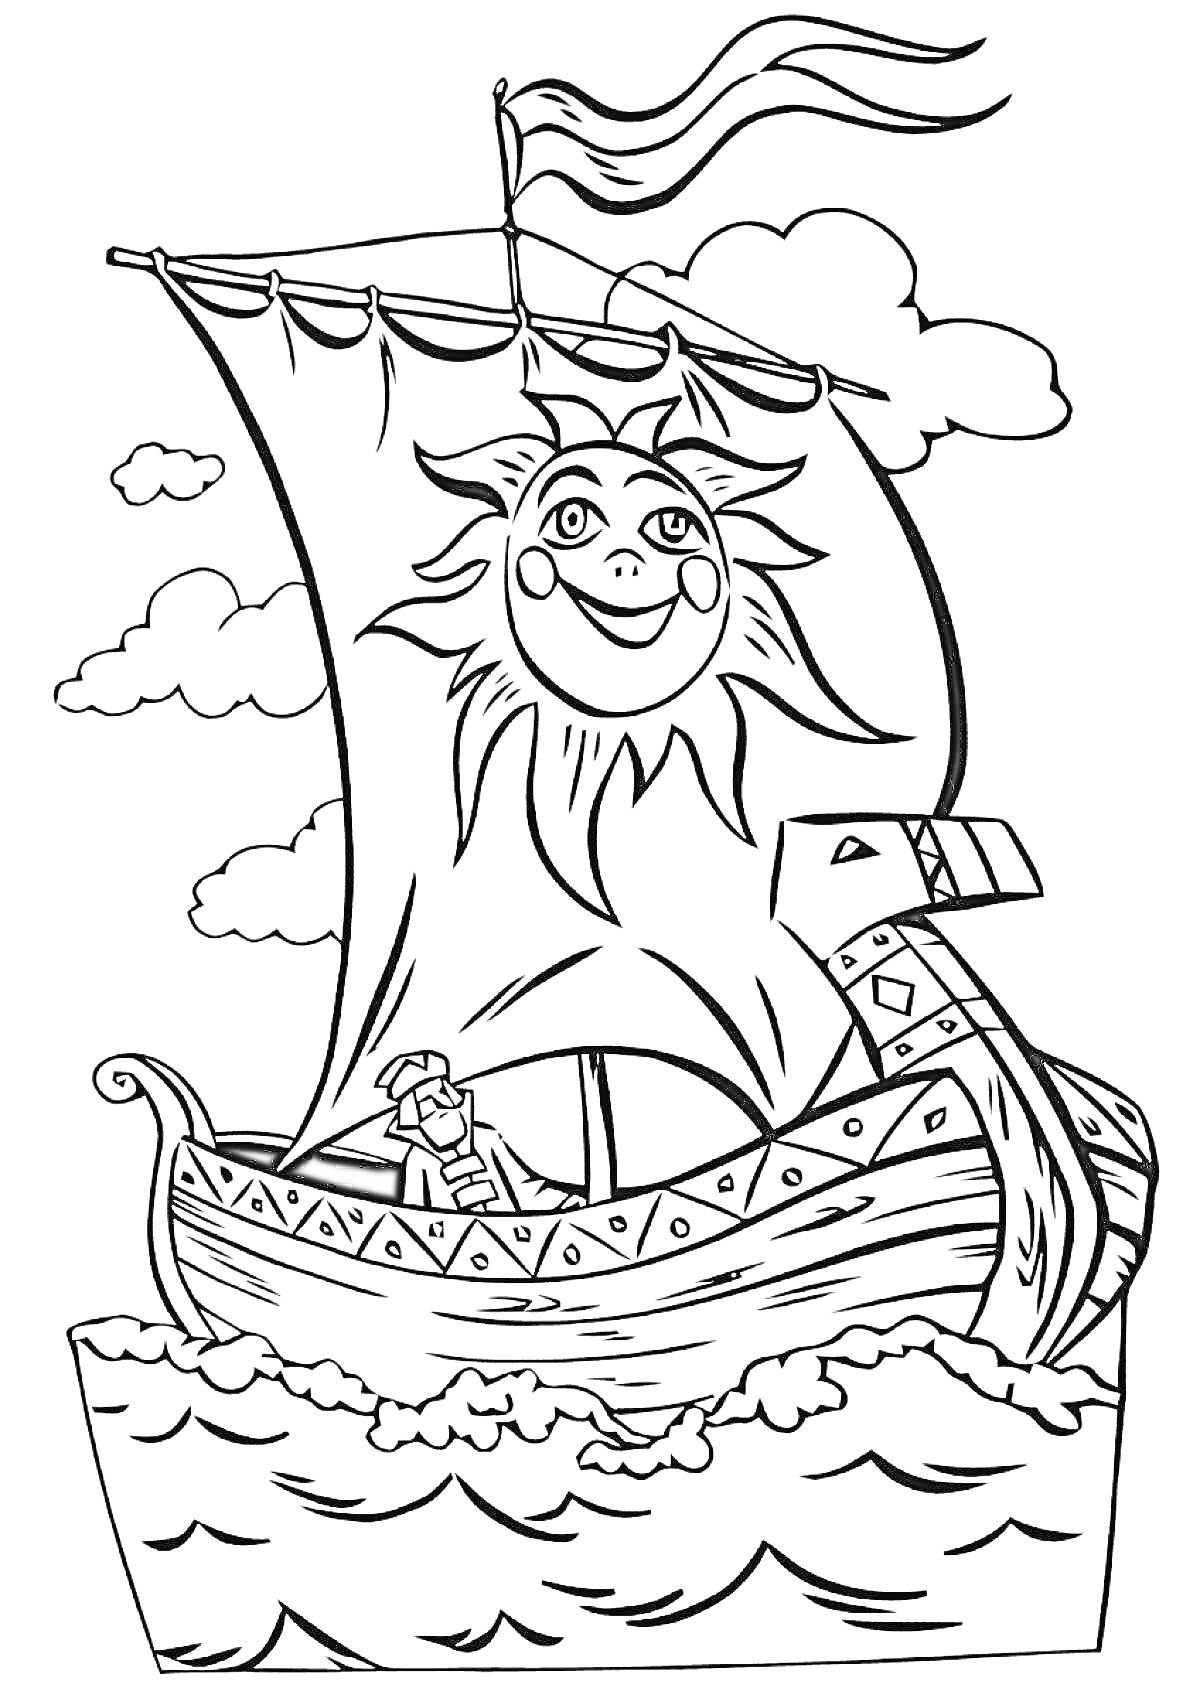 Корабль из мультфильма викингов с солнцем на парусе, волны и облака